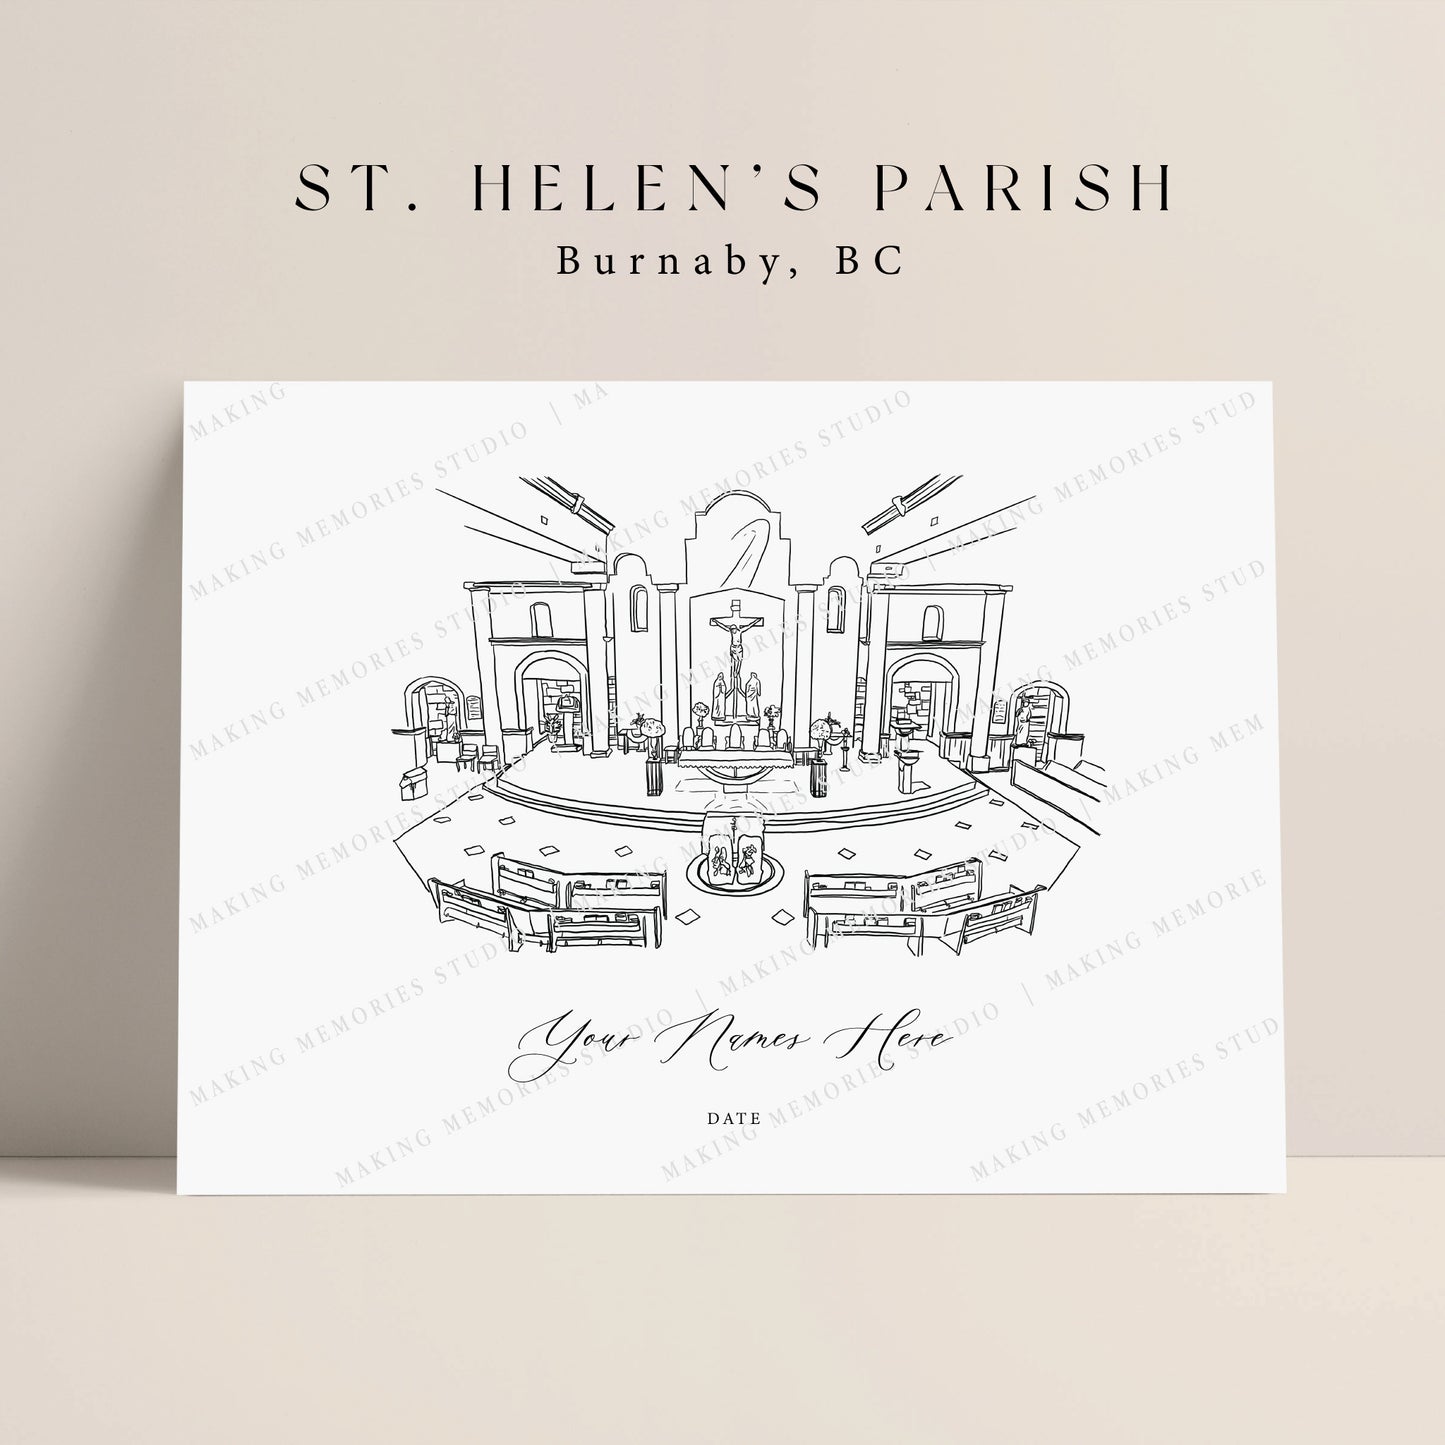 St. Helen's Parish